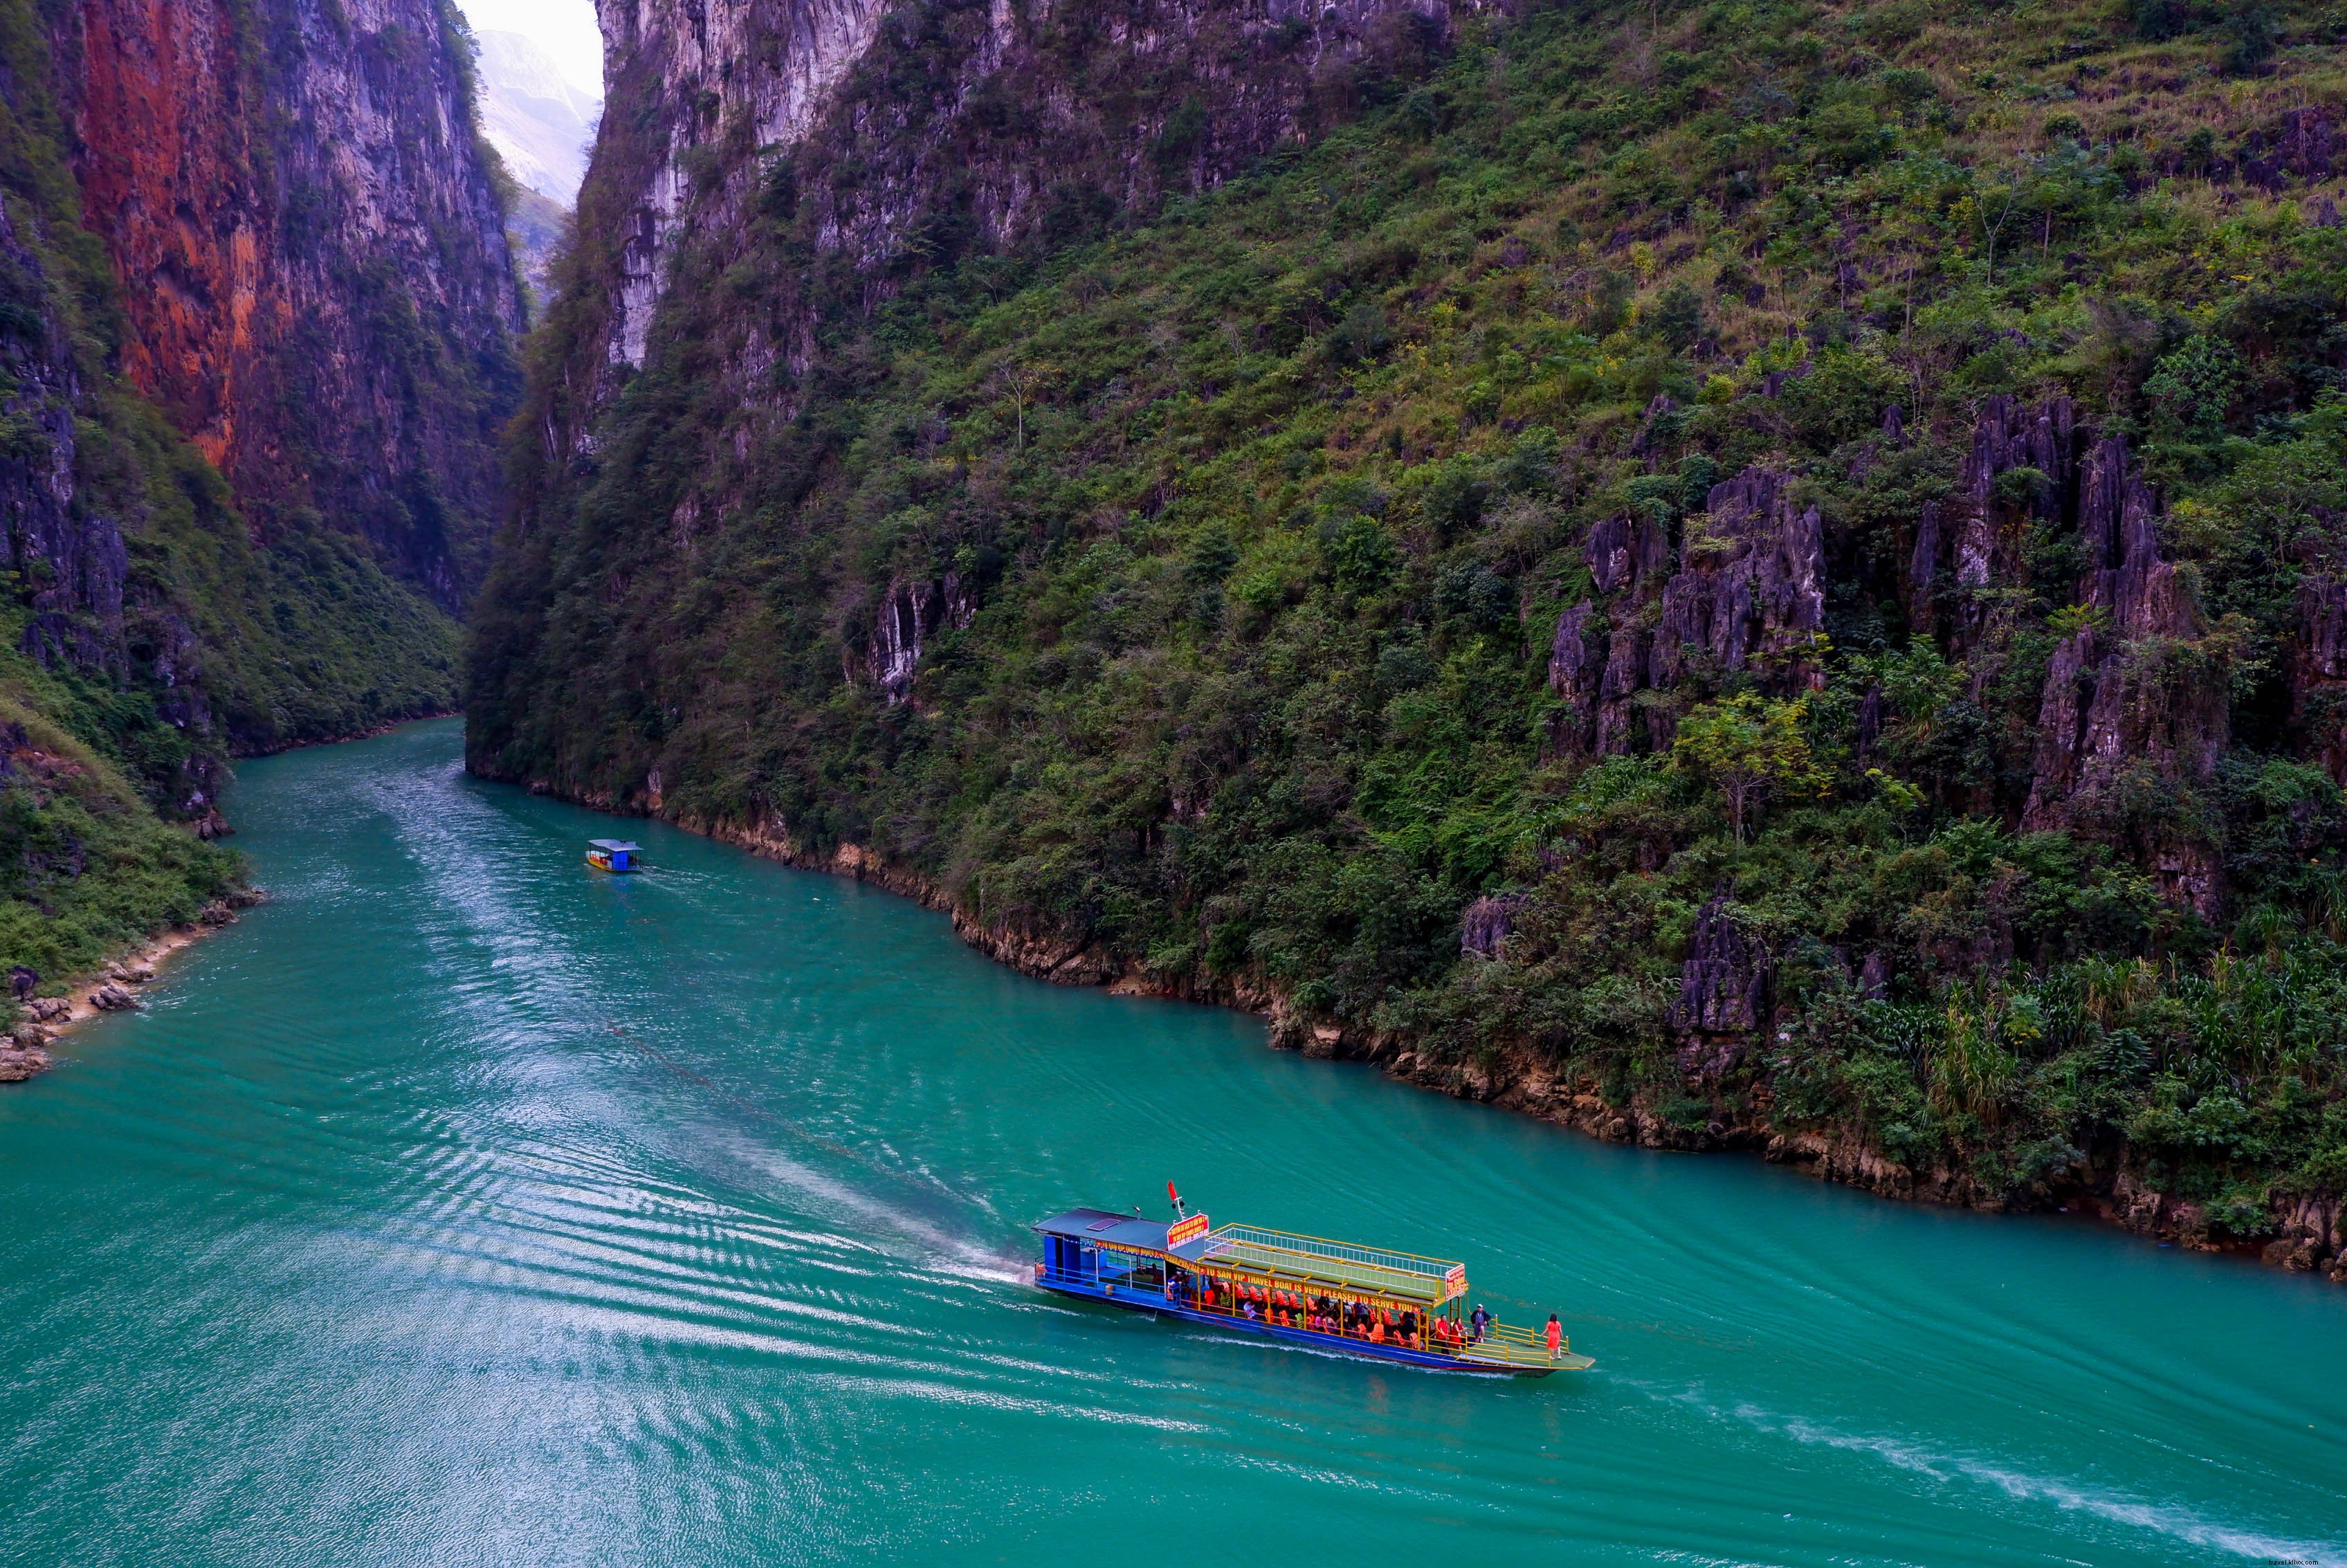 ボートは甘美な緑の山々の間の川に沿って移動します写真 